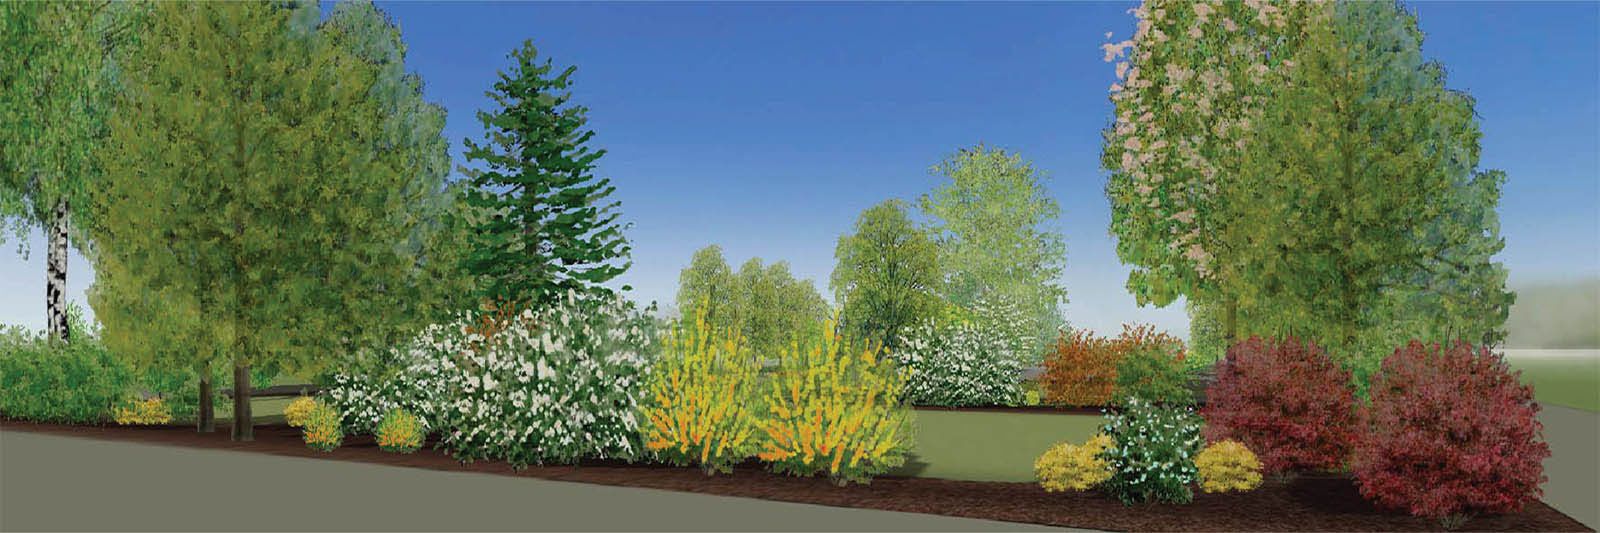 profesjonalnym programie do projektowania i wizualizacji ogrodów 3D Gardenphilia DESIGNER